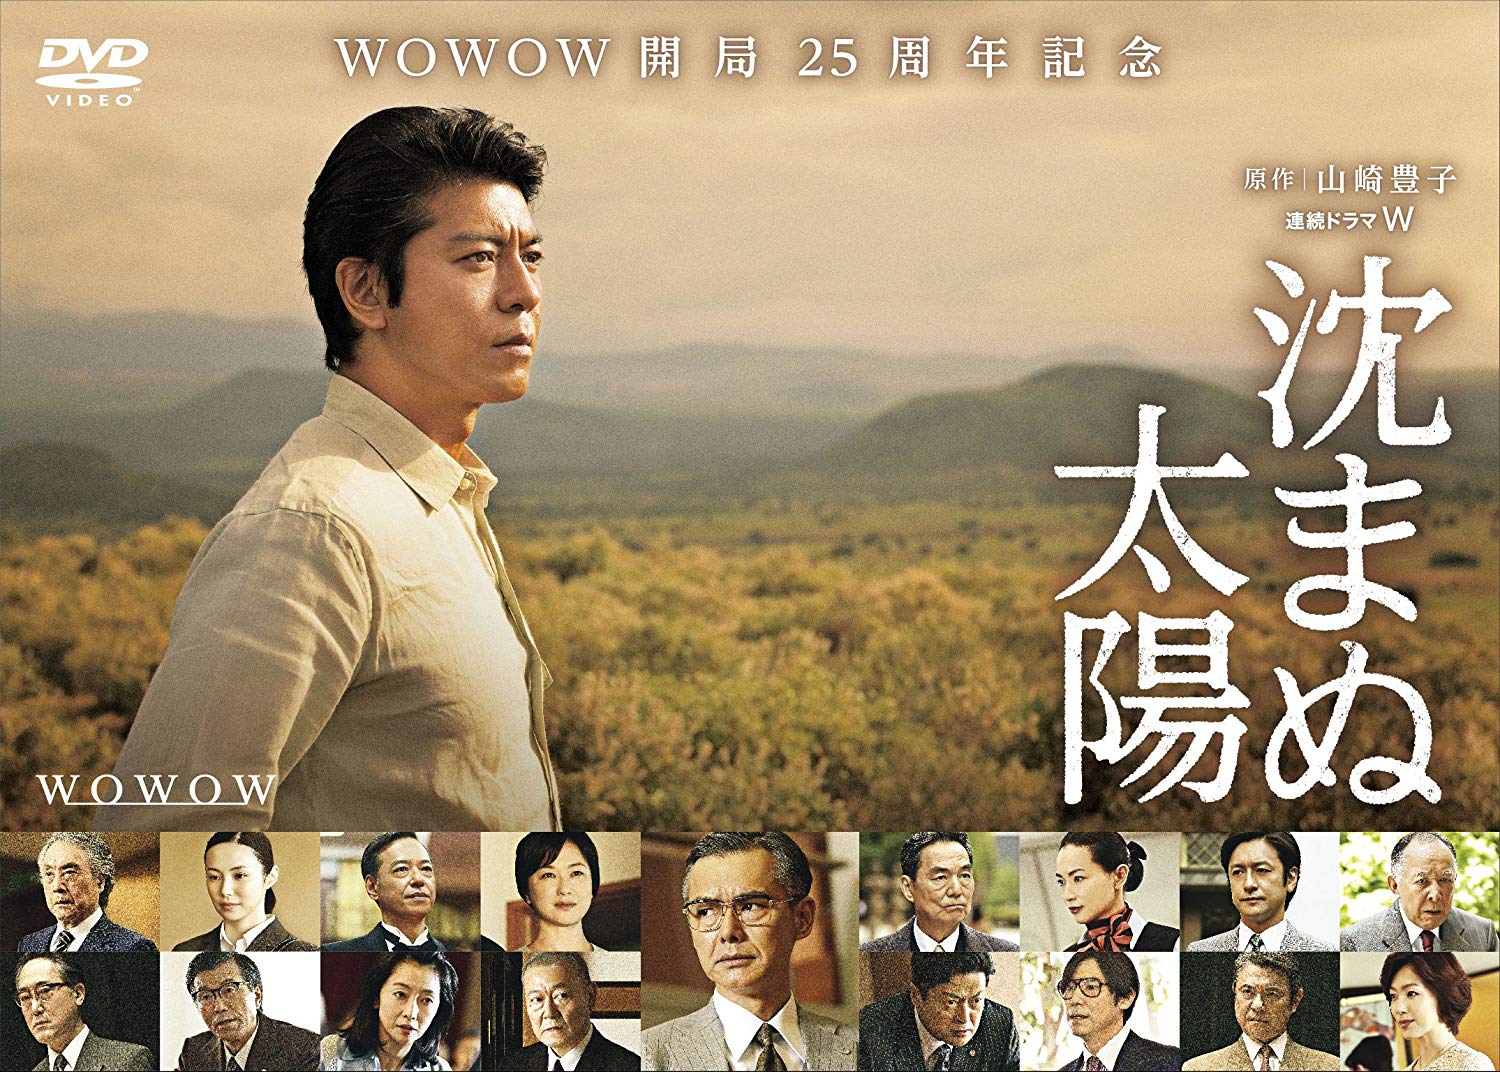 上川隆也のドラマ 映画おすすめランキング32選 21最新版 Rank1 ランク1 人気ランキングまとめサイト 国内最大級